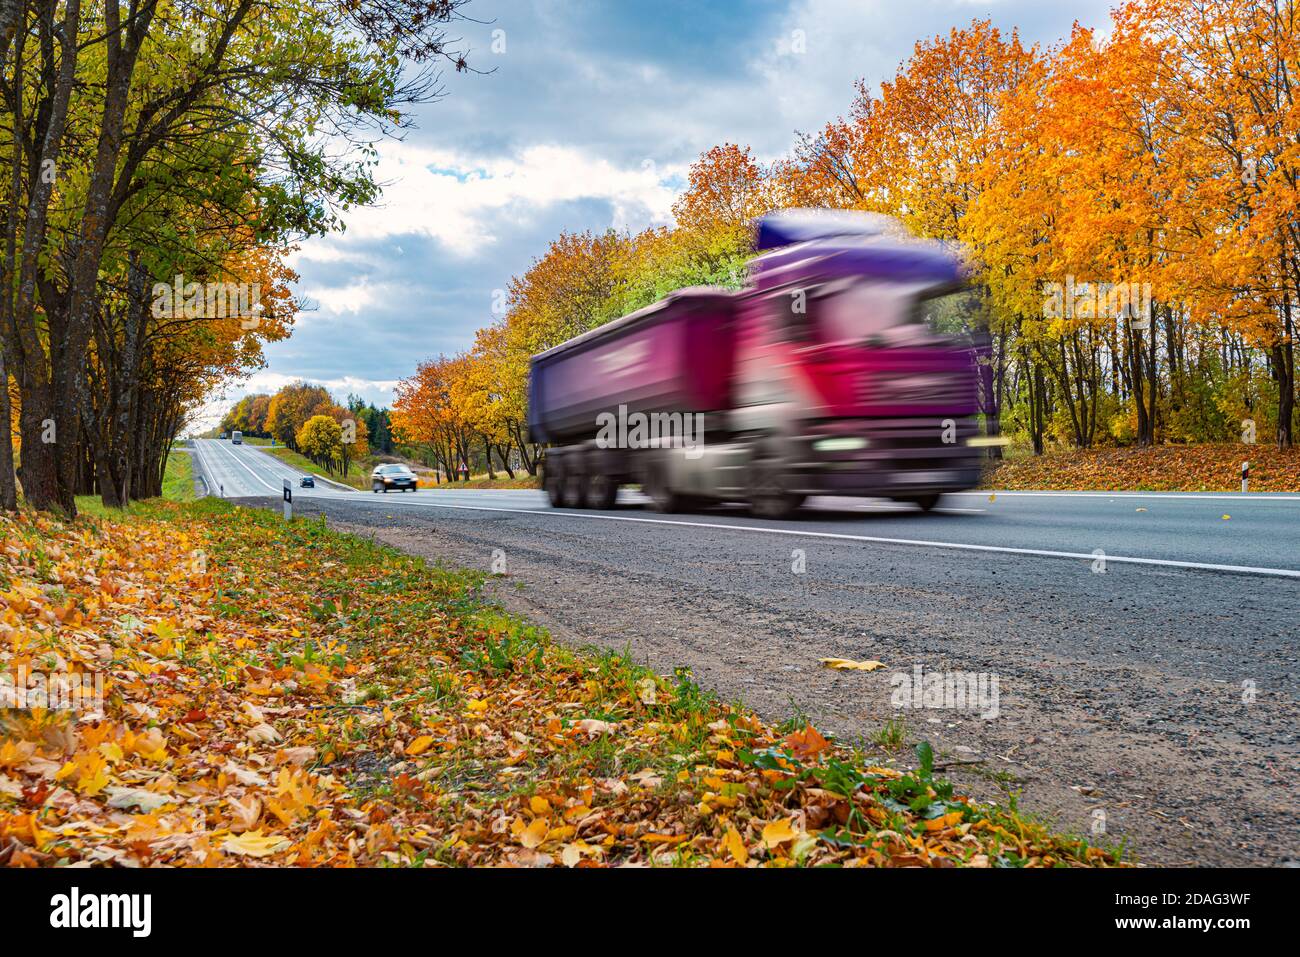 Camión de transporte rápido en una carretera en Baviera, Alemania, Europa. Transporte, carga y entrega. Foto de stock